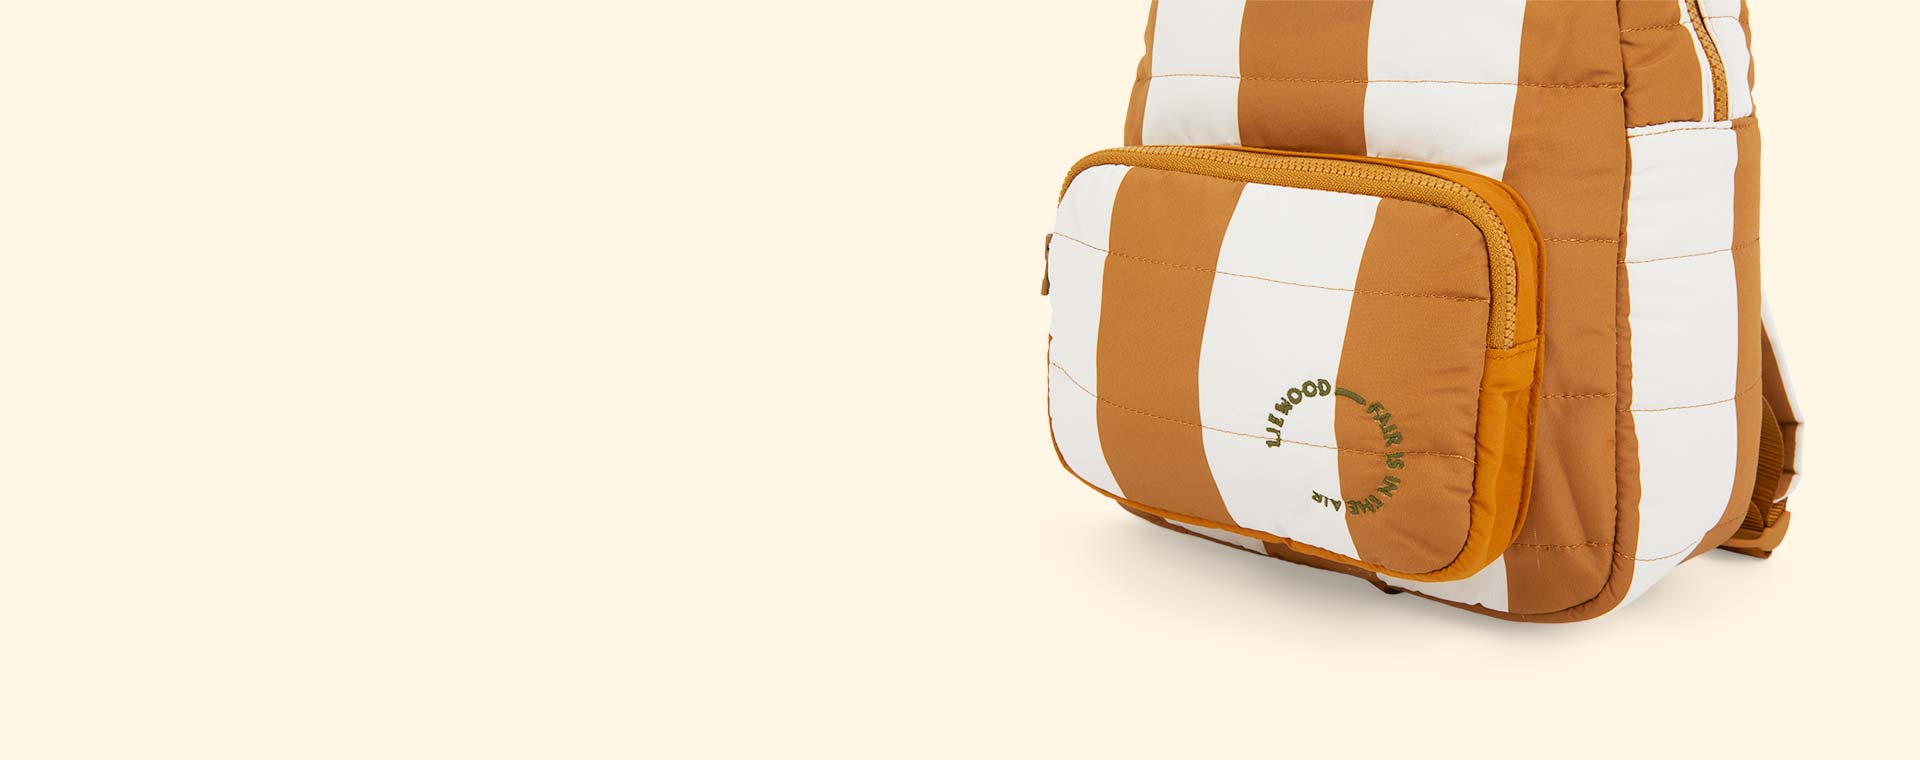 Stripe: Golden Caramel/Sandy Liewood Sage Backpack